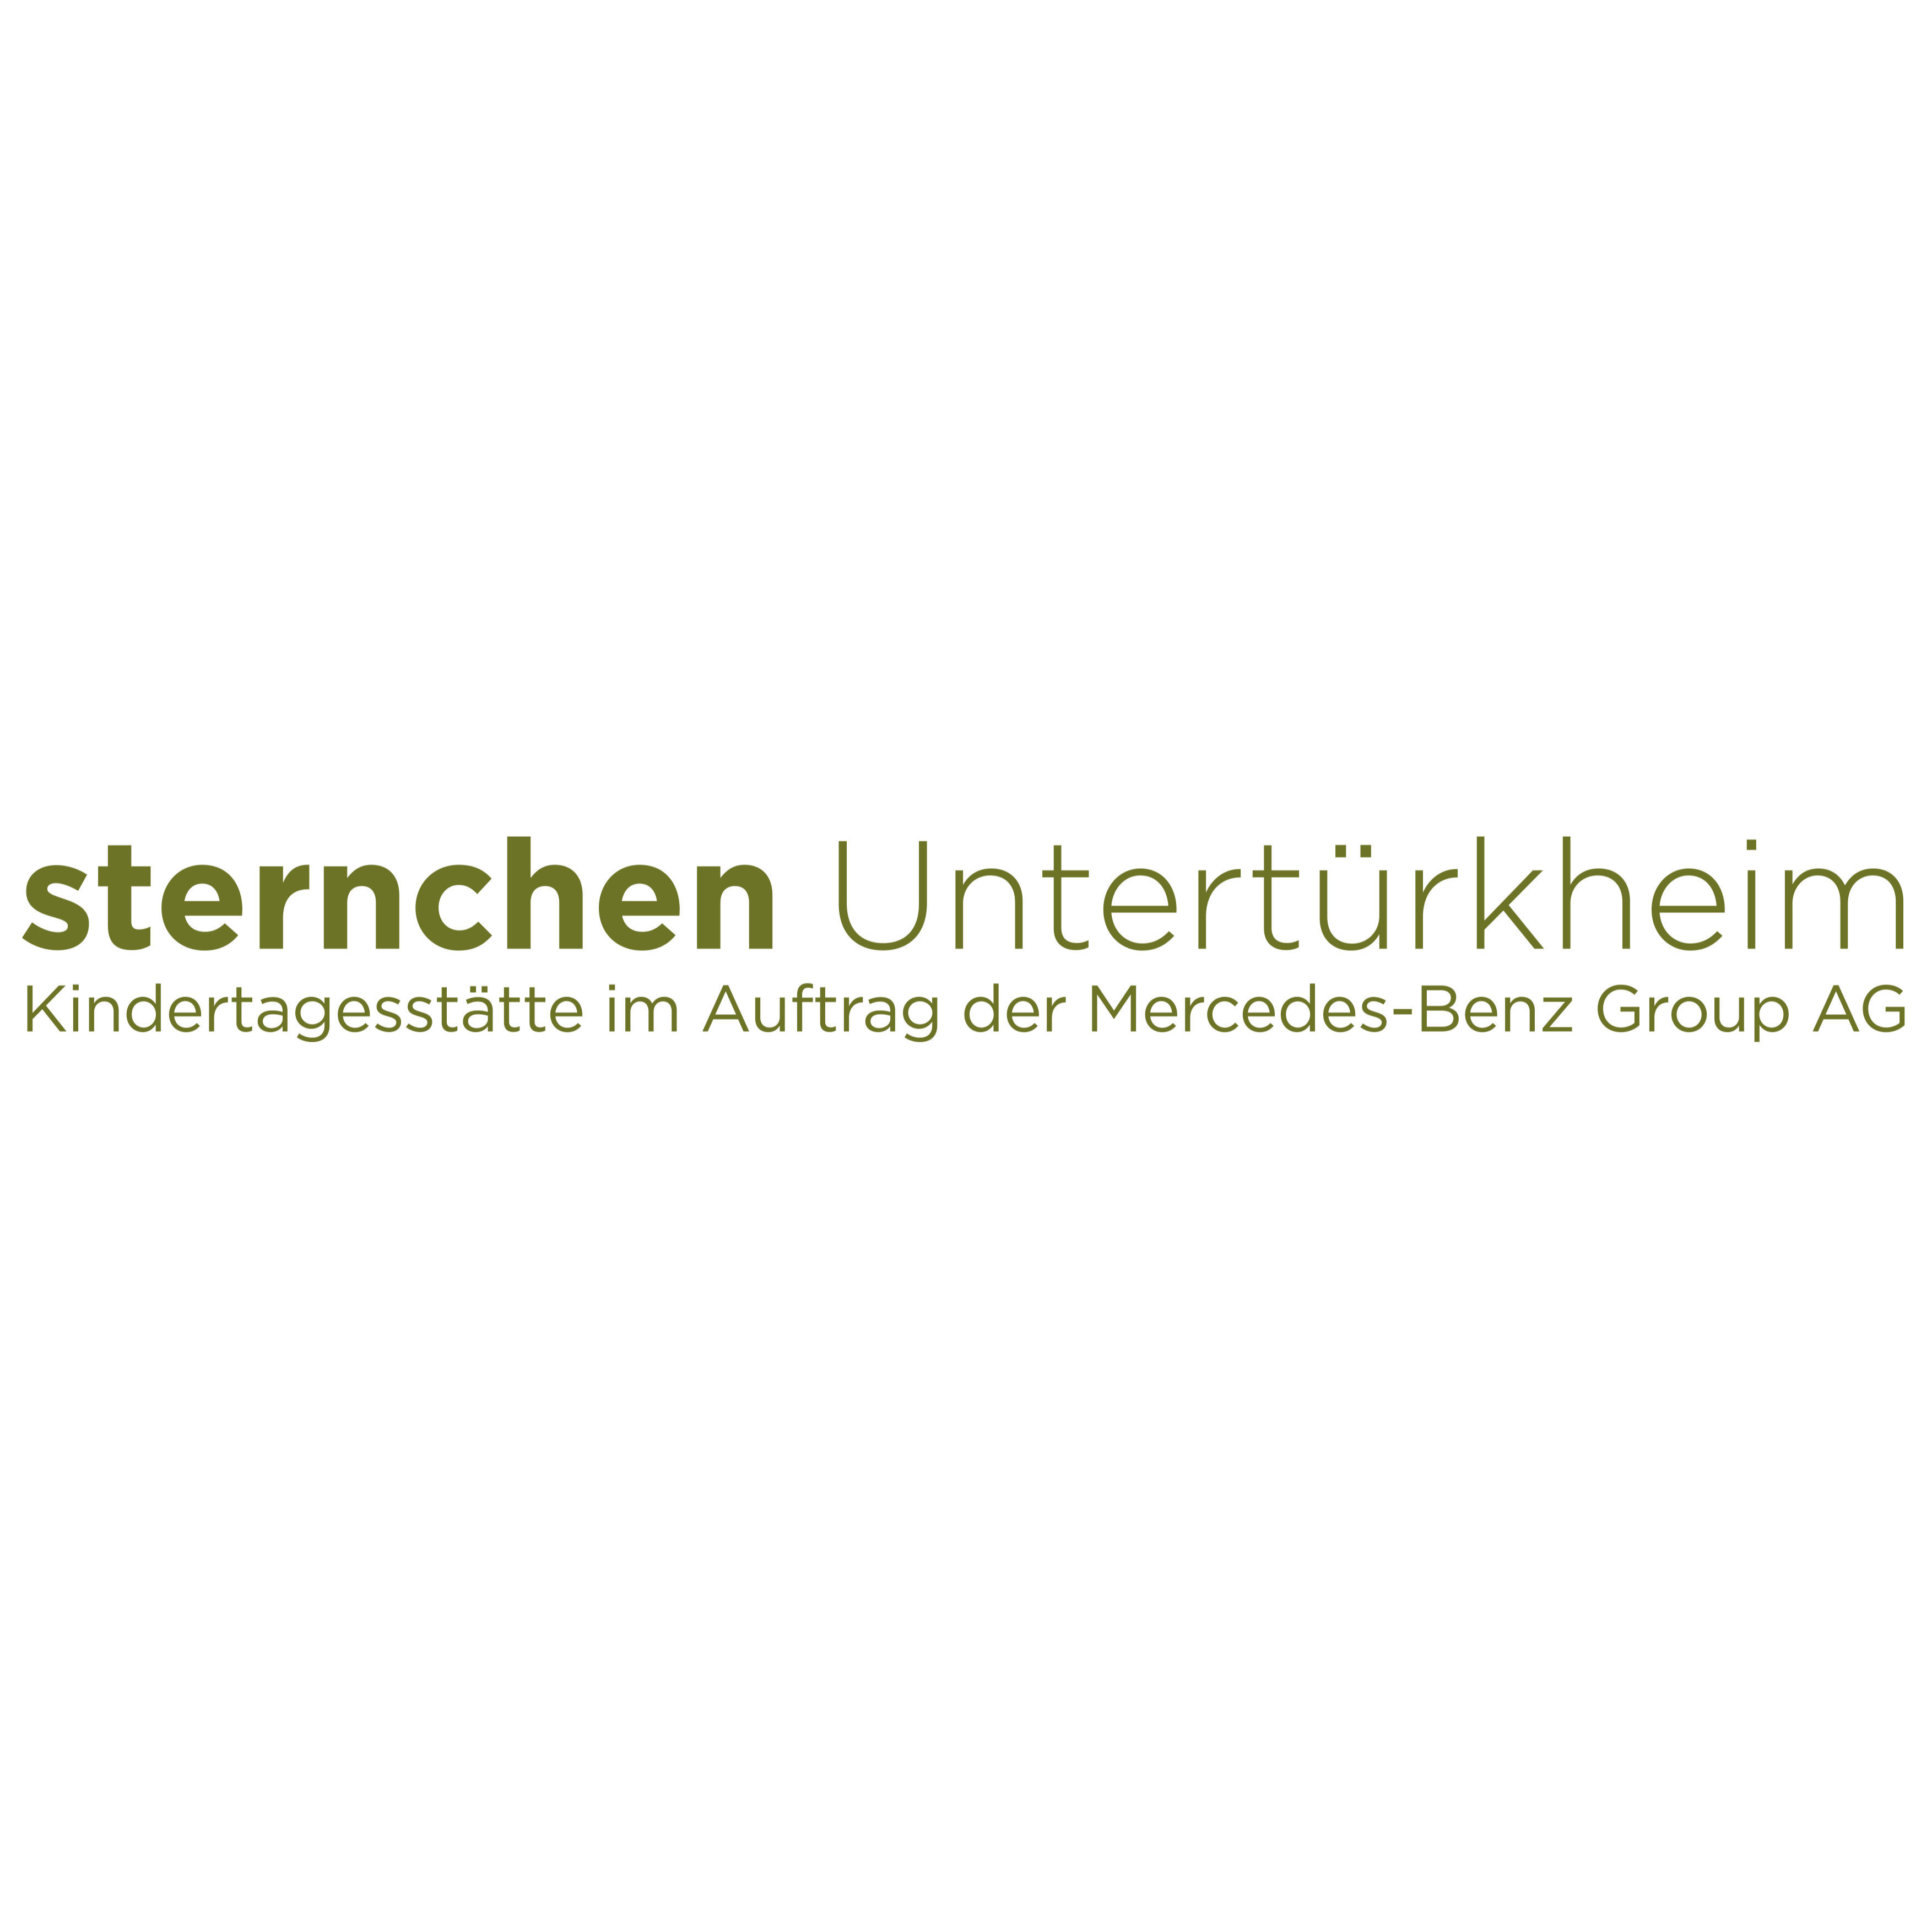 sternchen Untertürkheim - pme Familienservice in Stuttgart - Logo